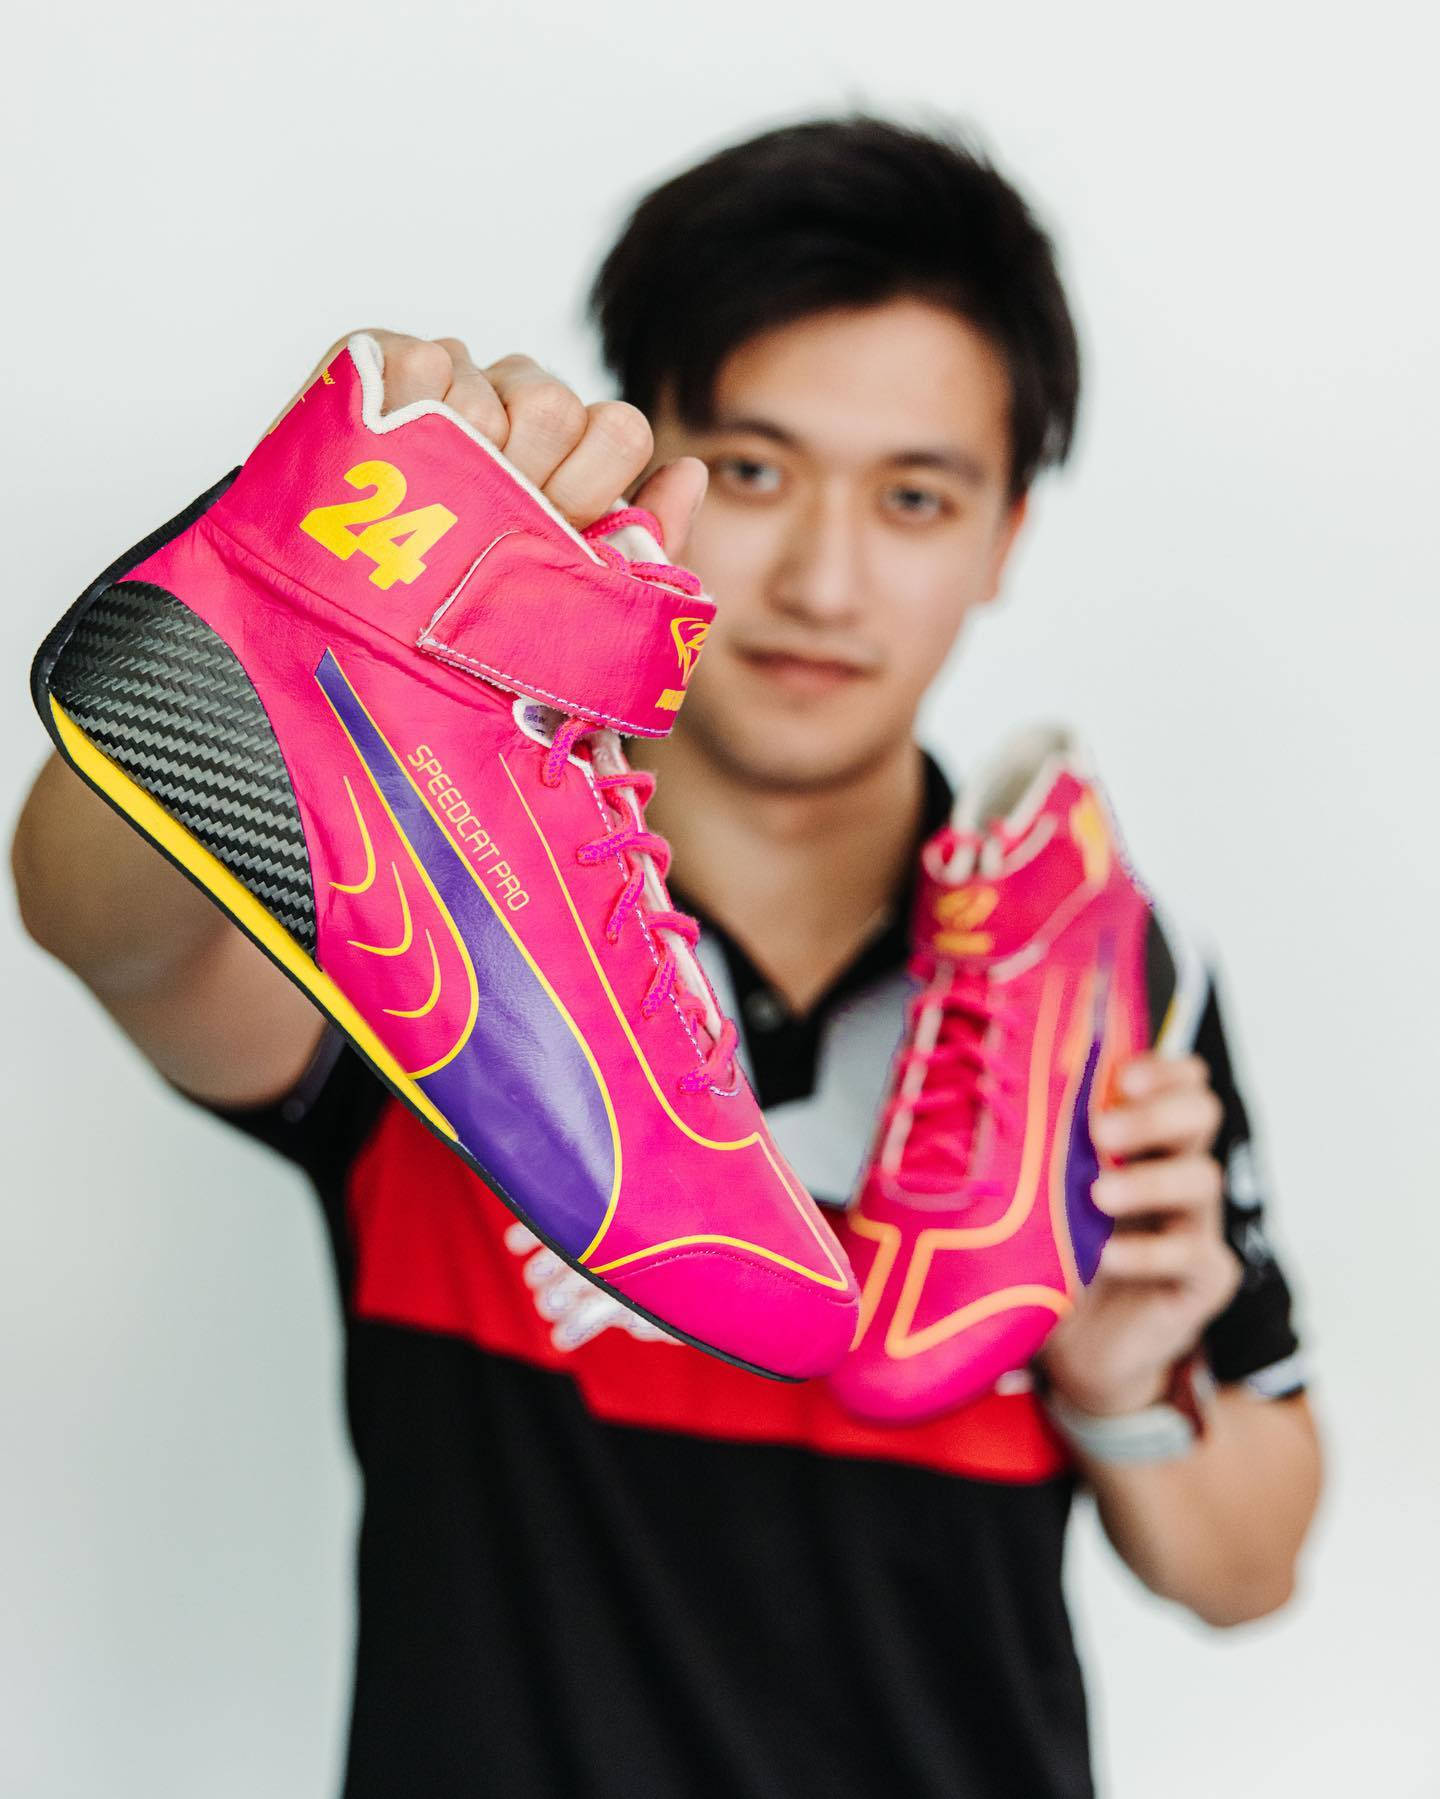 Guanyu Zhou Pink Sneakers Wallpaper